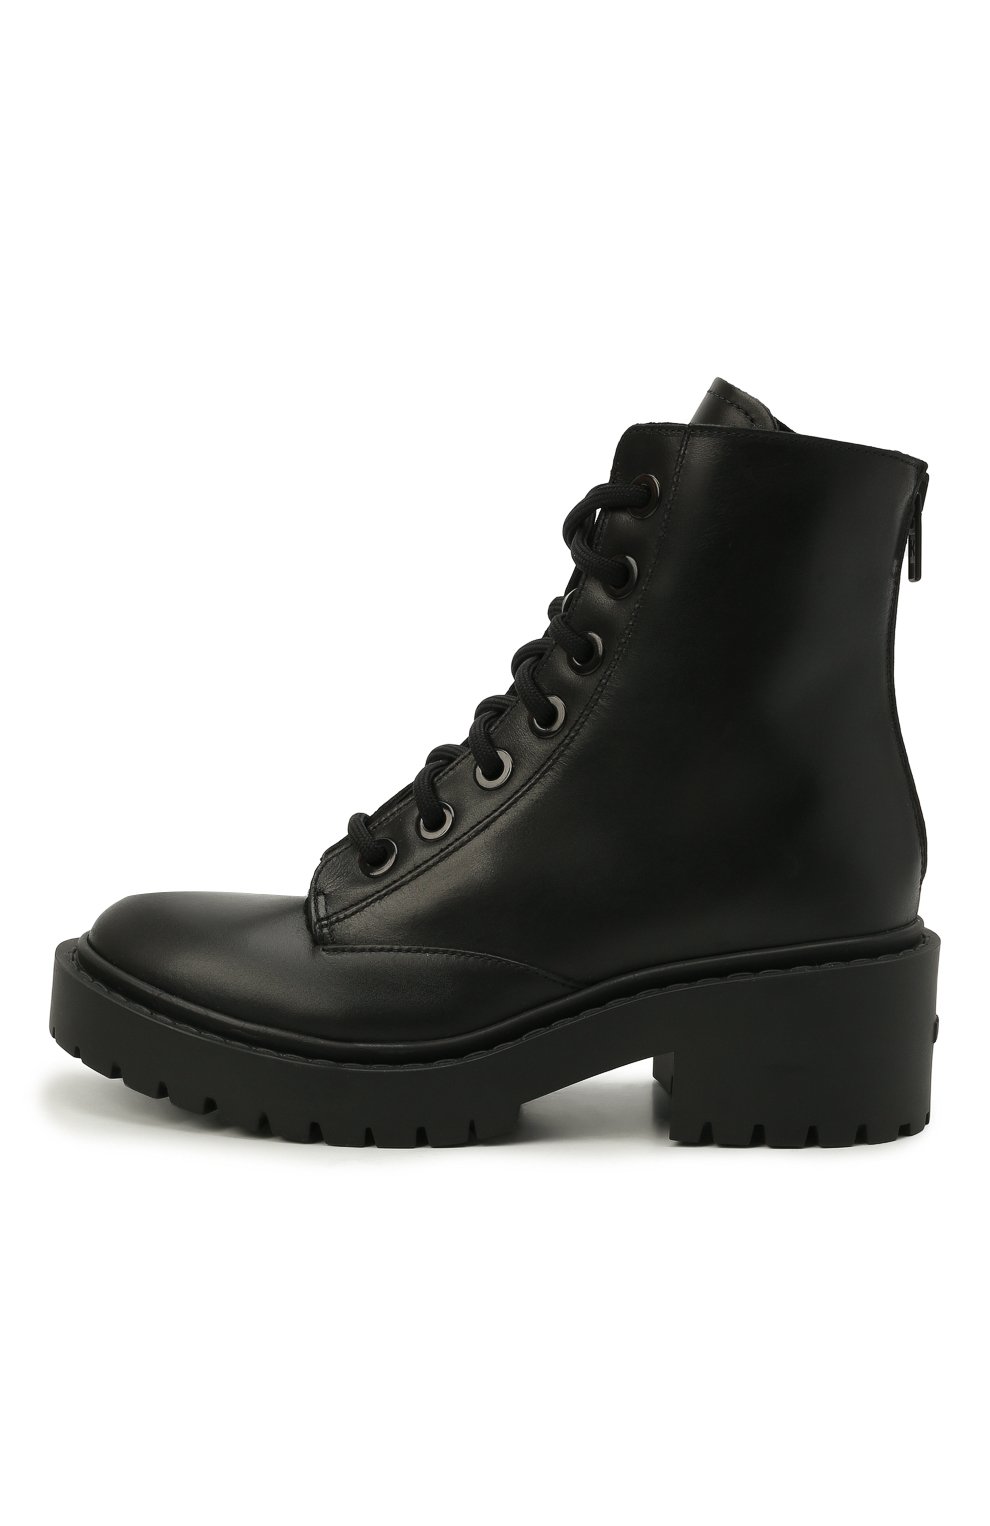 Кожаные ботинки Pike Kenzo FA62BT341L63, цвет чёрный, размер 37 - фото 2